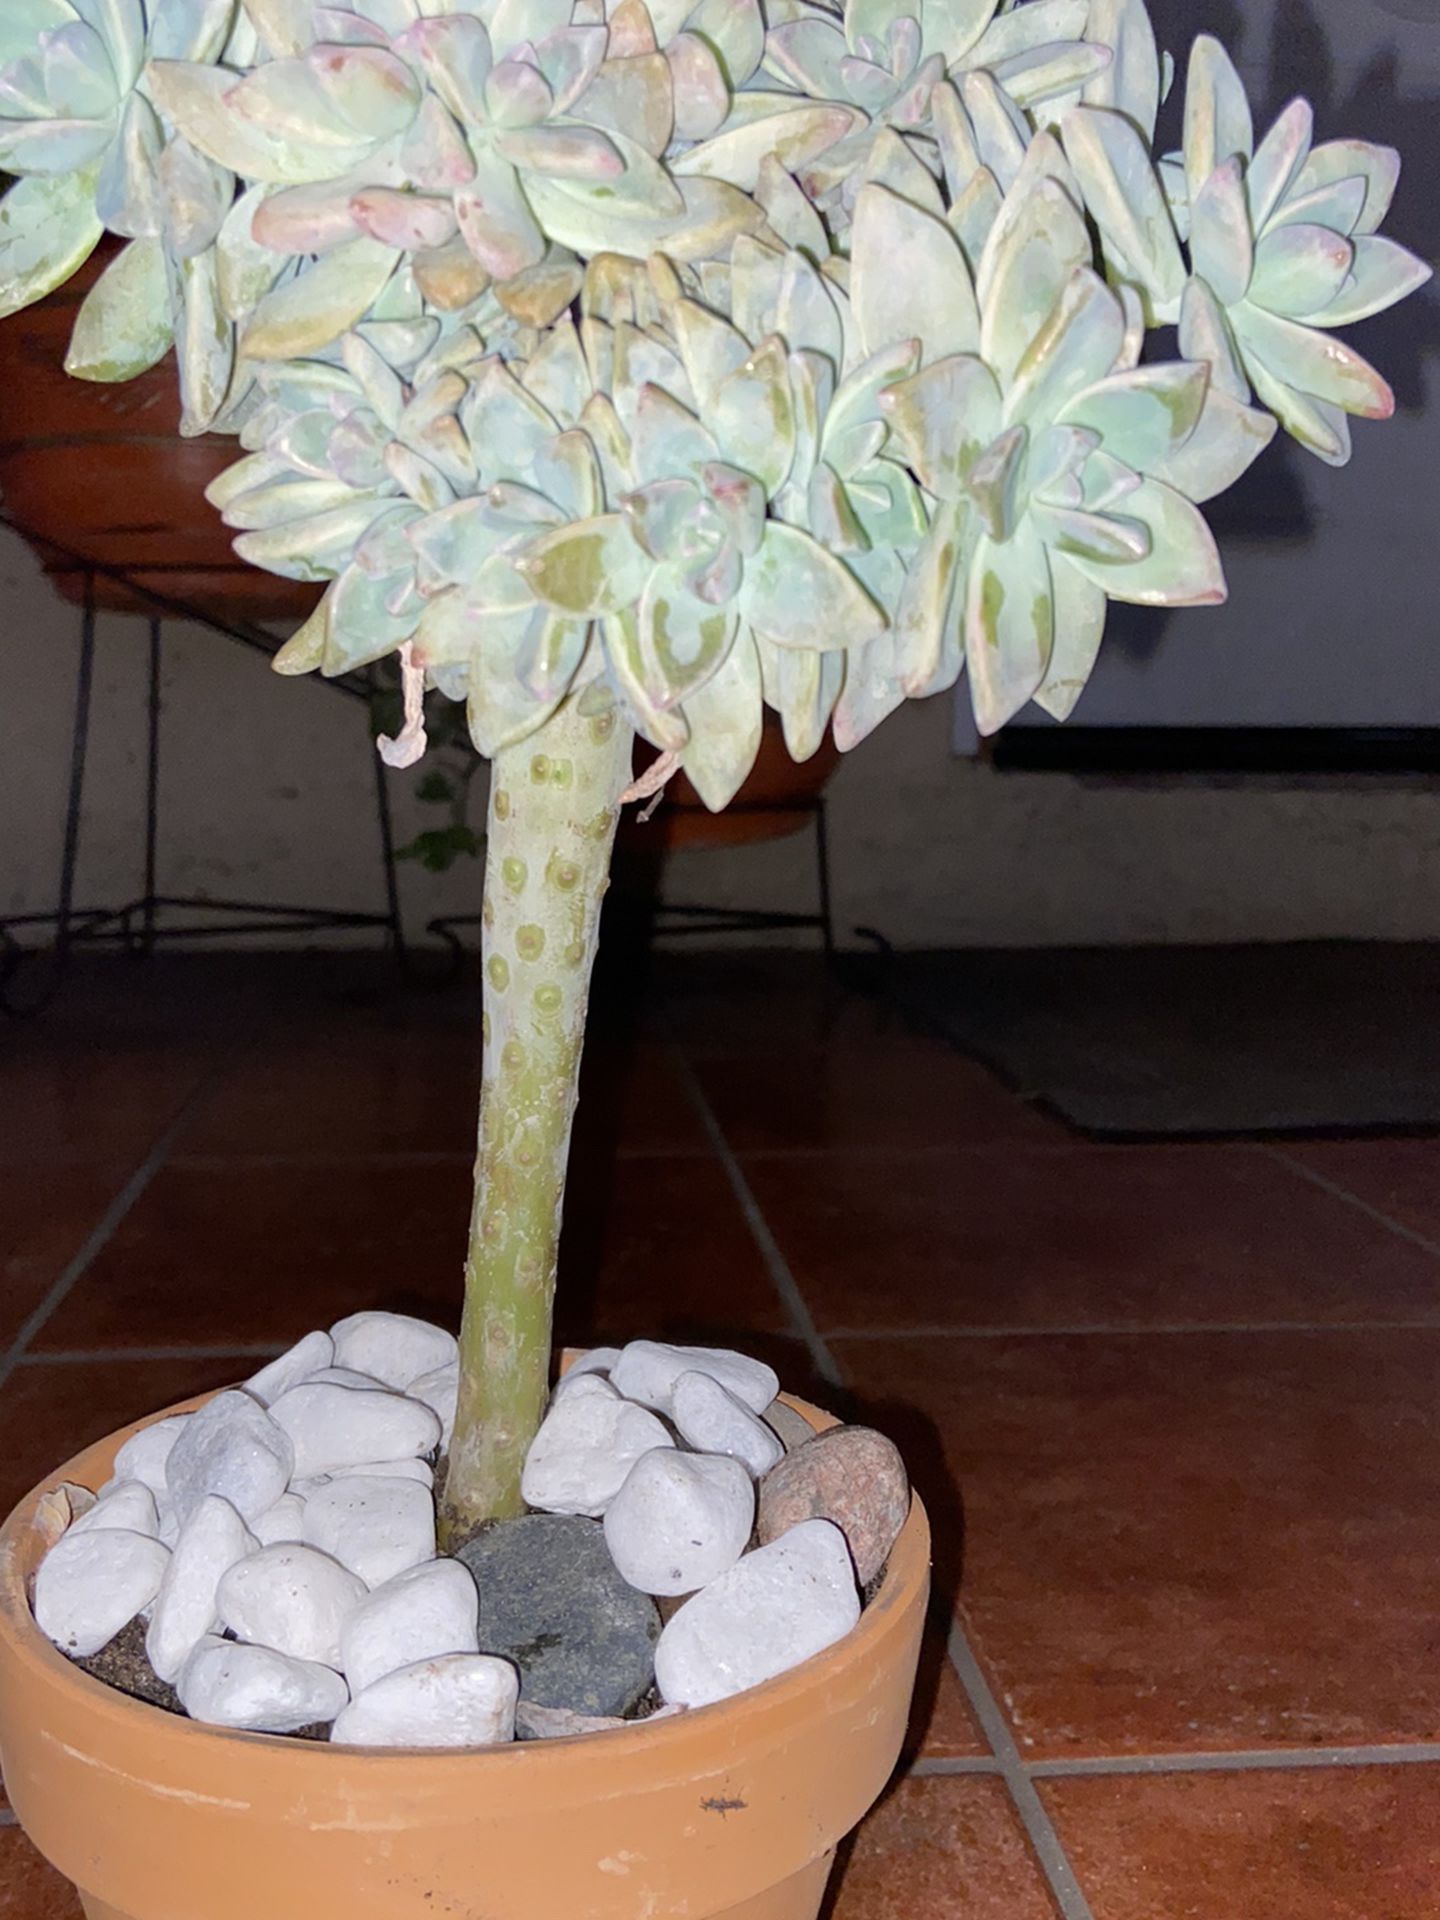 Graptopetalum Paraguayense Crest Succulent Crest Over 12” Tall In Terracota Pot